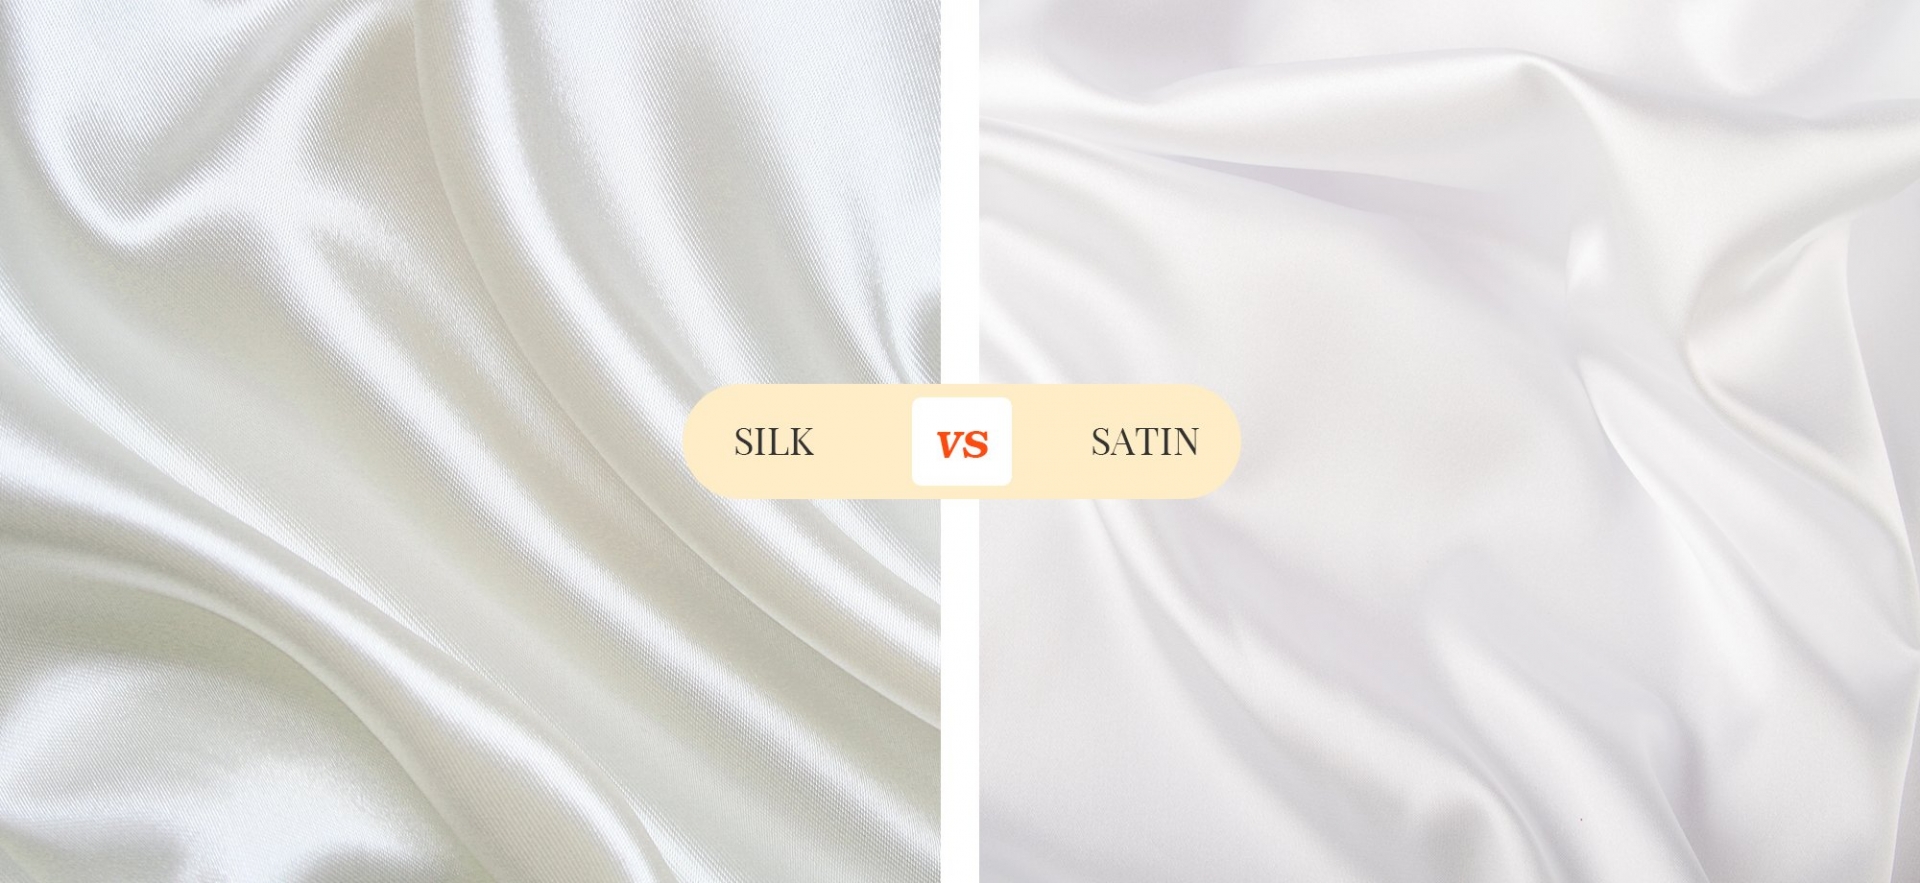 Đối với các loại vải màu trắng, vải lụa thường có màu trắng ngà trong khi vải satin lại có màu trắng tinh do sử dụng các loại sợi nhân tạo